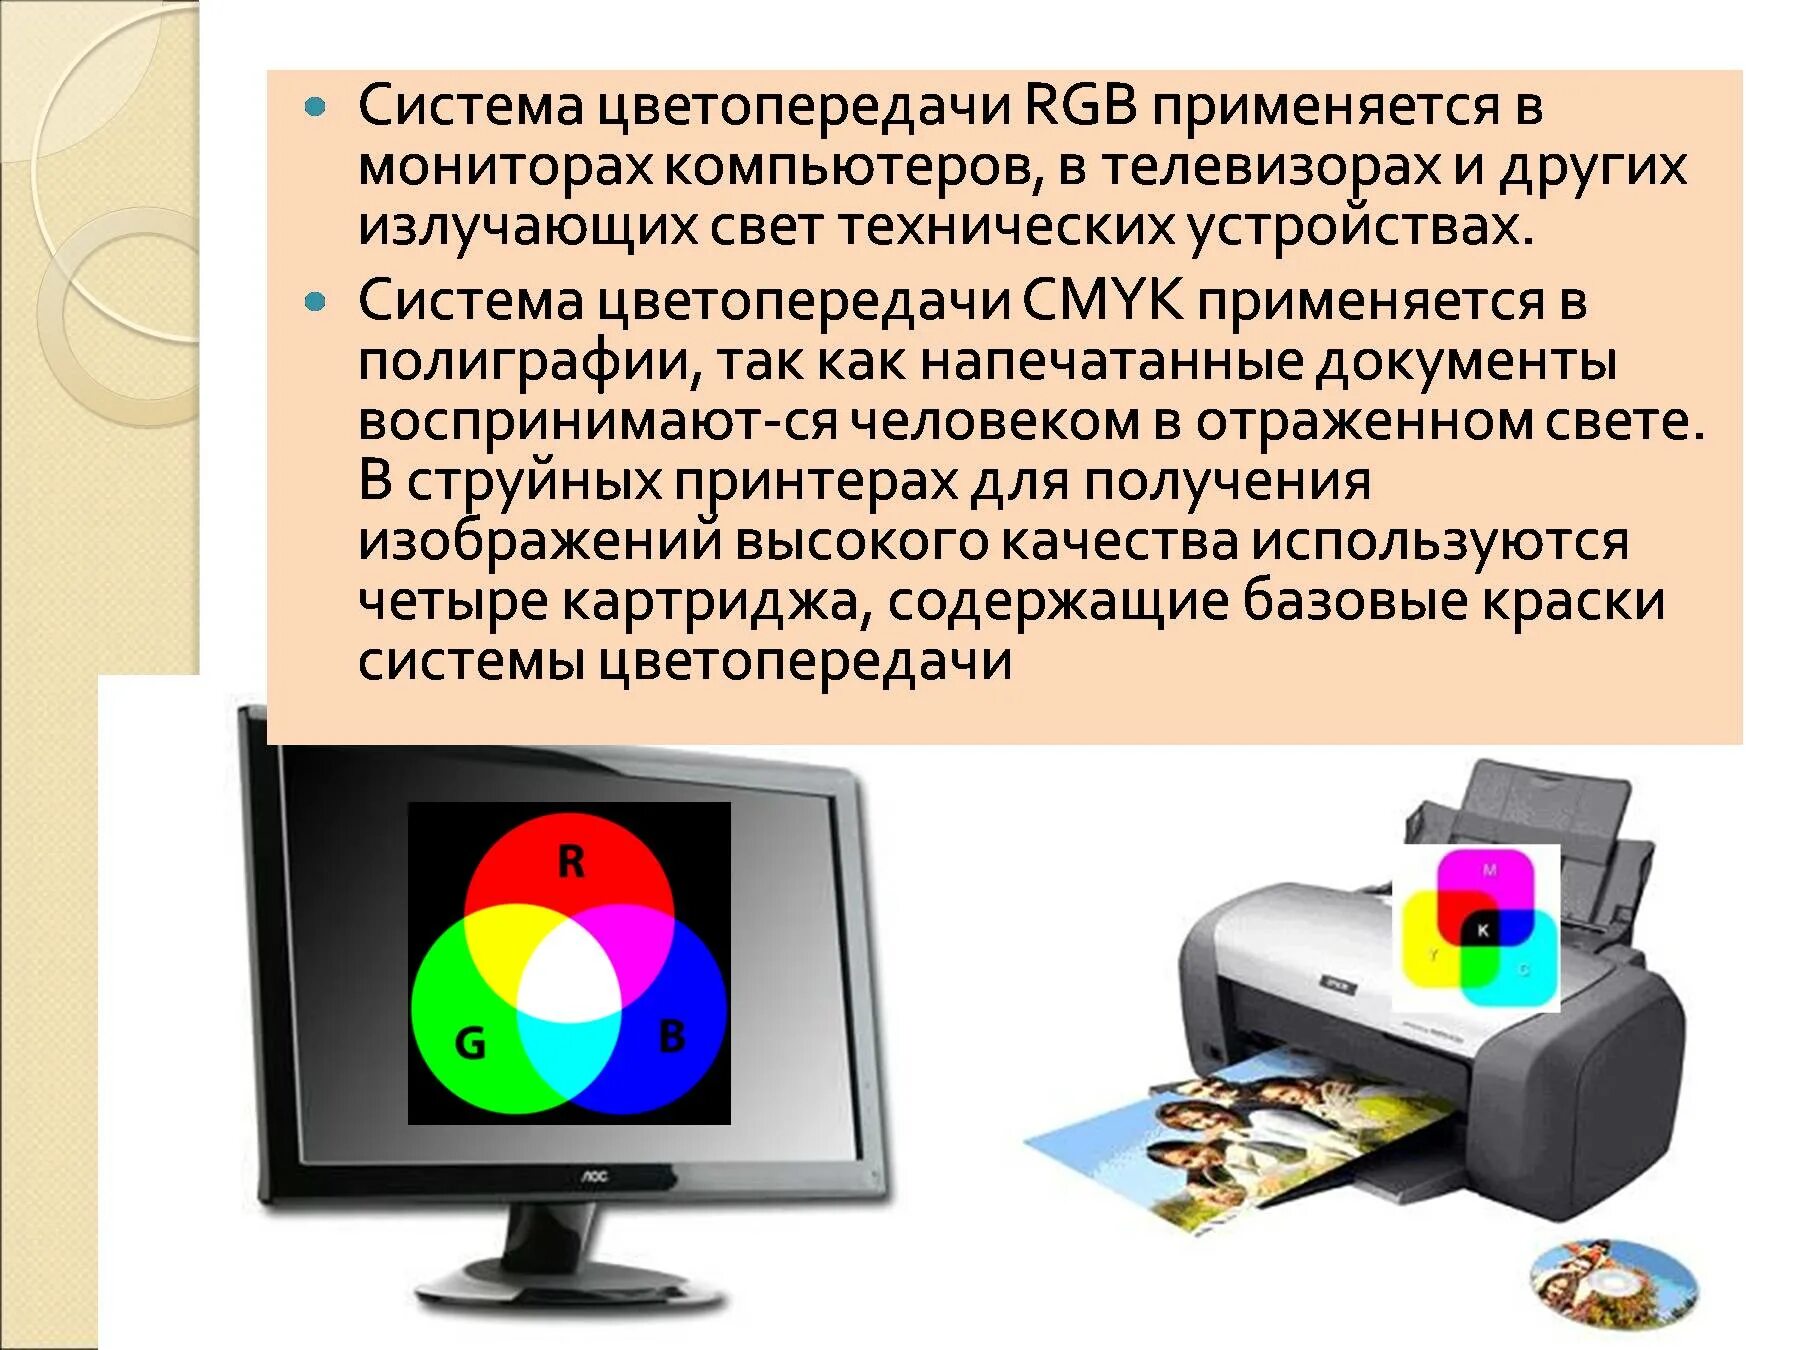 Монитор количество цветов. Система цветопередачи RGB. Система цветопередачи CMYK применяется в полиграфии. Формирование цветов в системе цветопередачи RGB. Цвета в информатике.